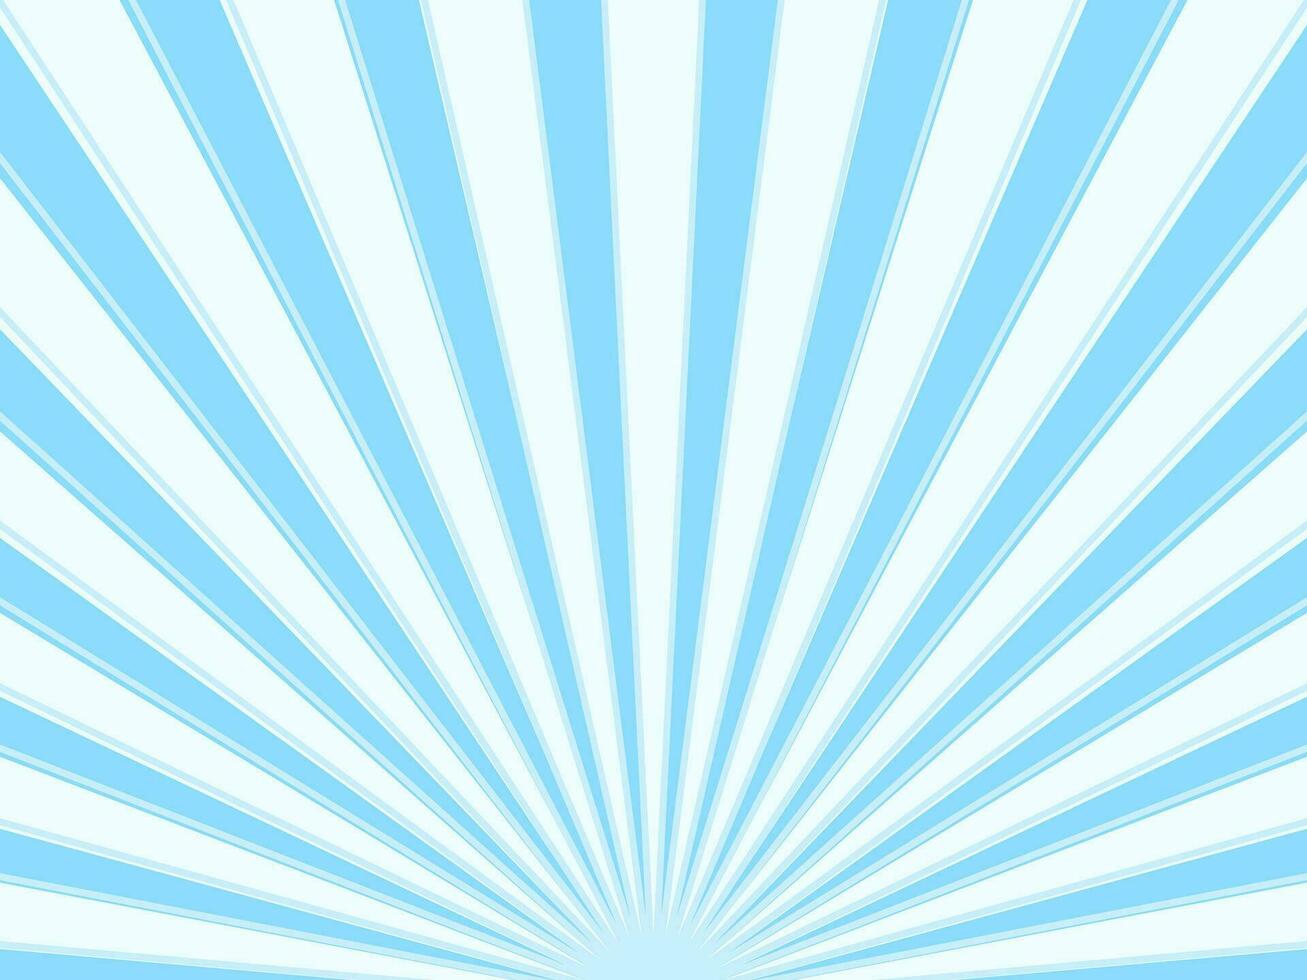 sunburst des rayons lumière bleu et blanc Contexte. rayon de soleil étoile éclatement. vecteur illustration